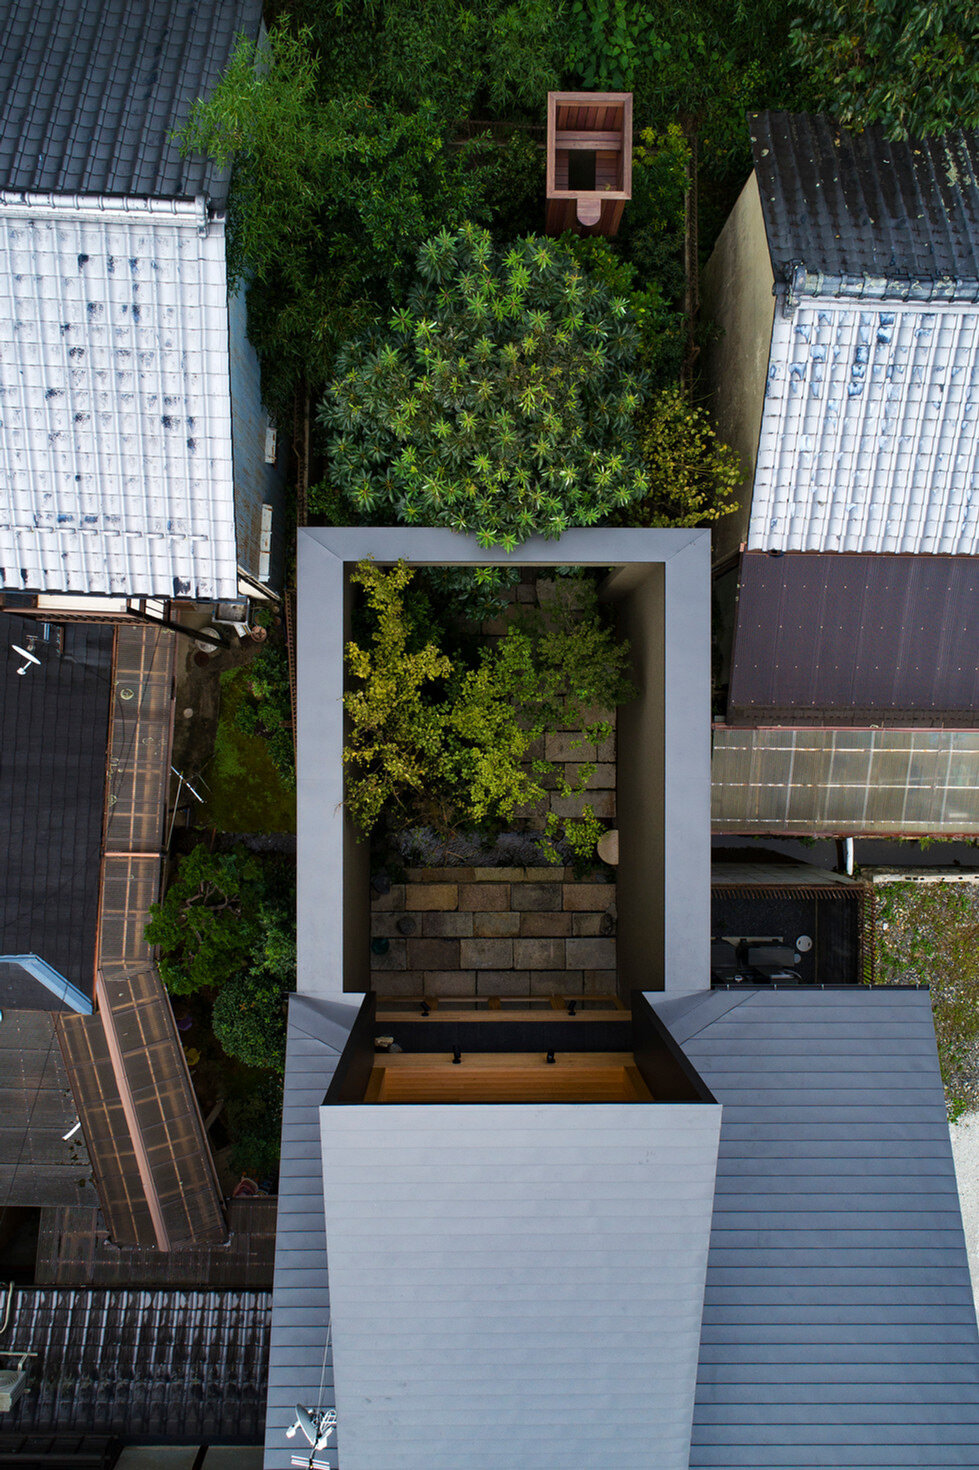 lush gardens and cave-like interiors characterize kyoto house by dai nagasaka/mega